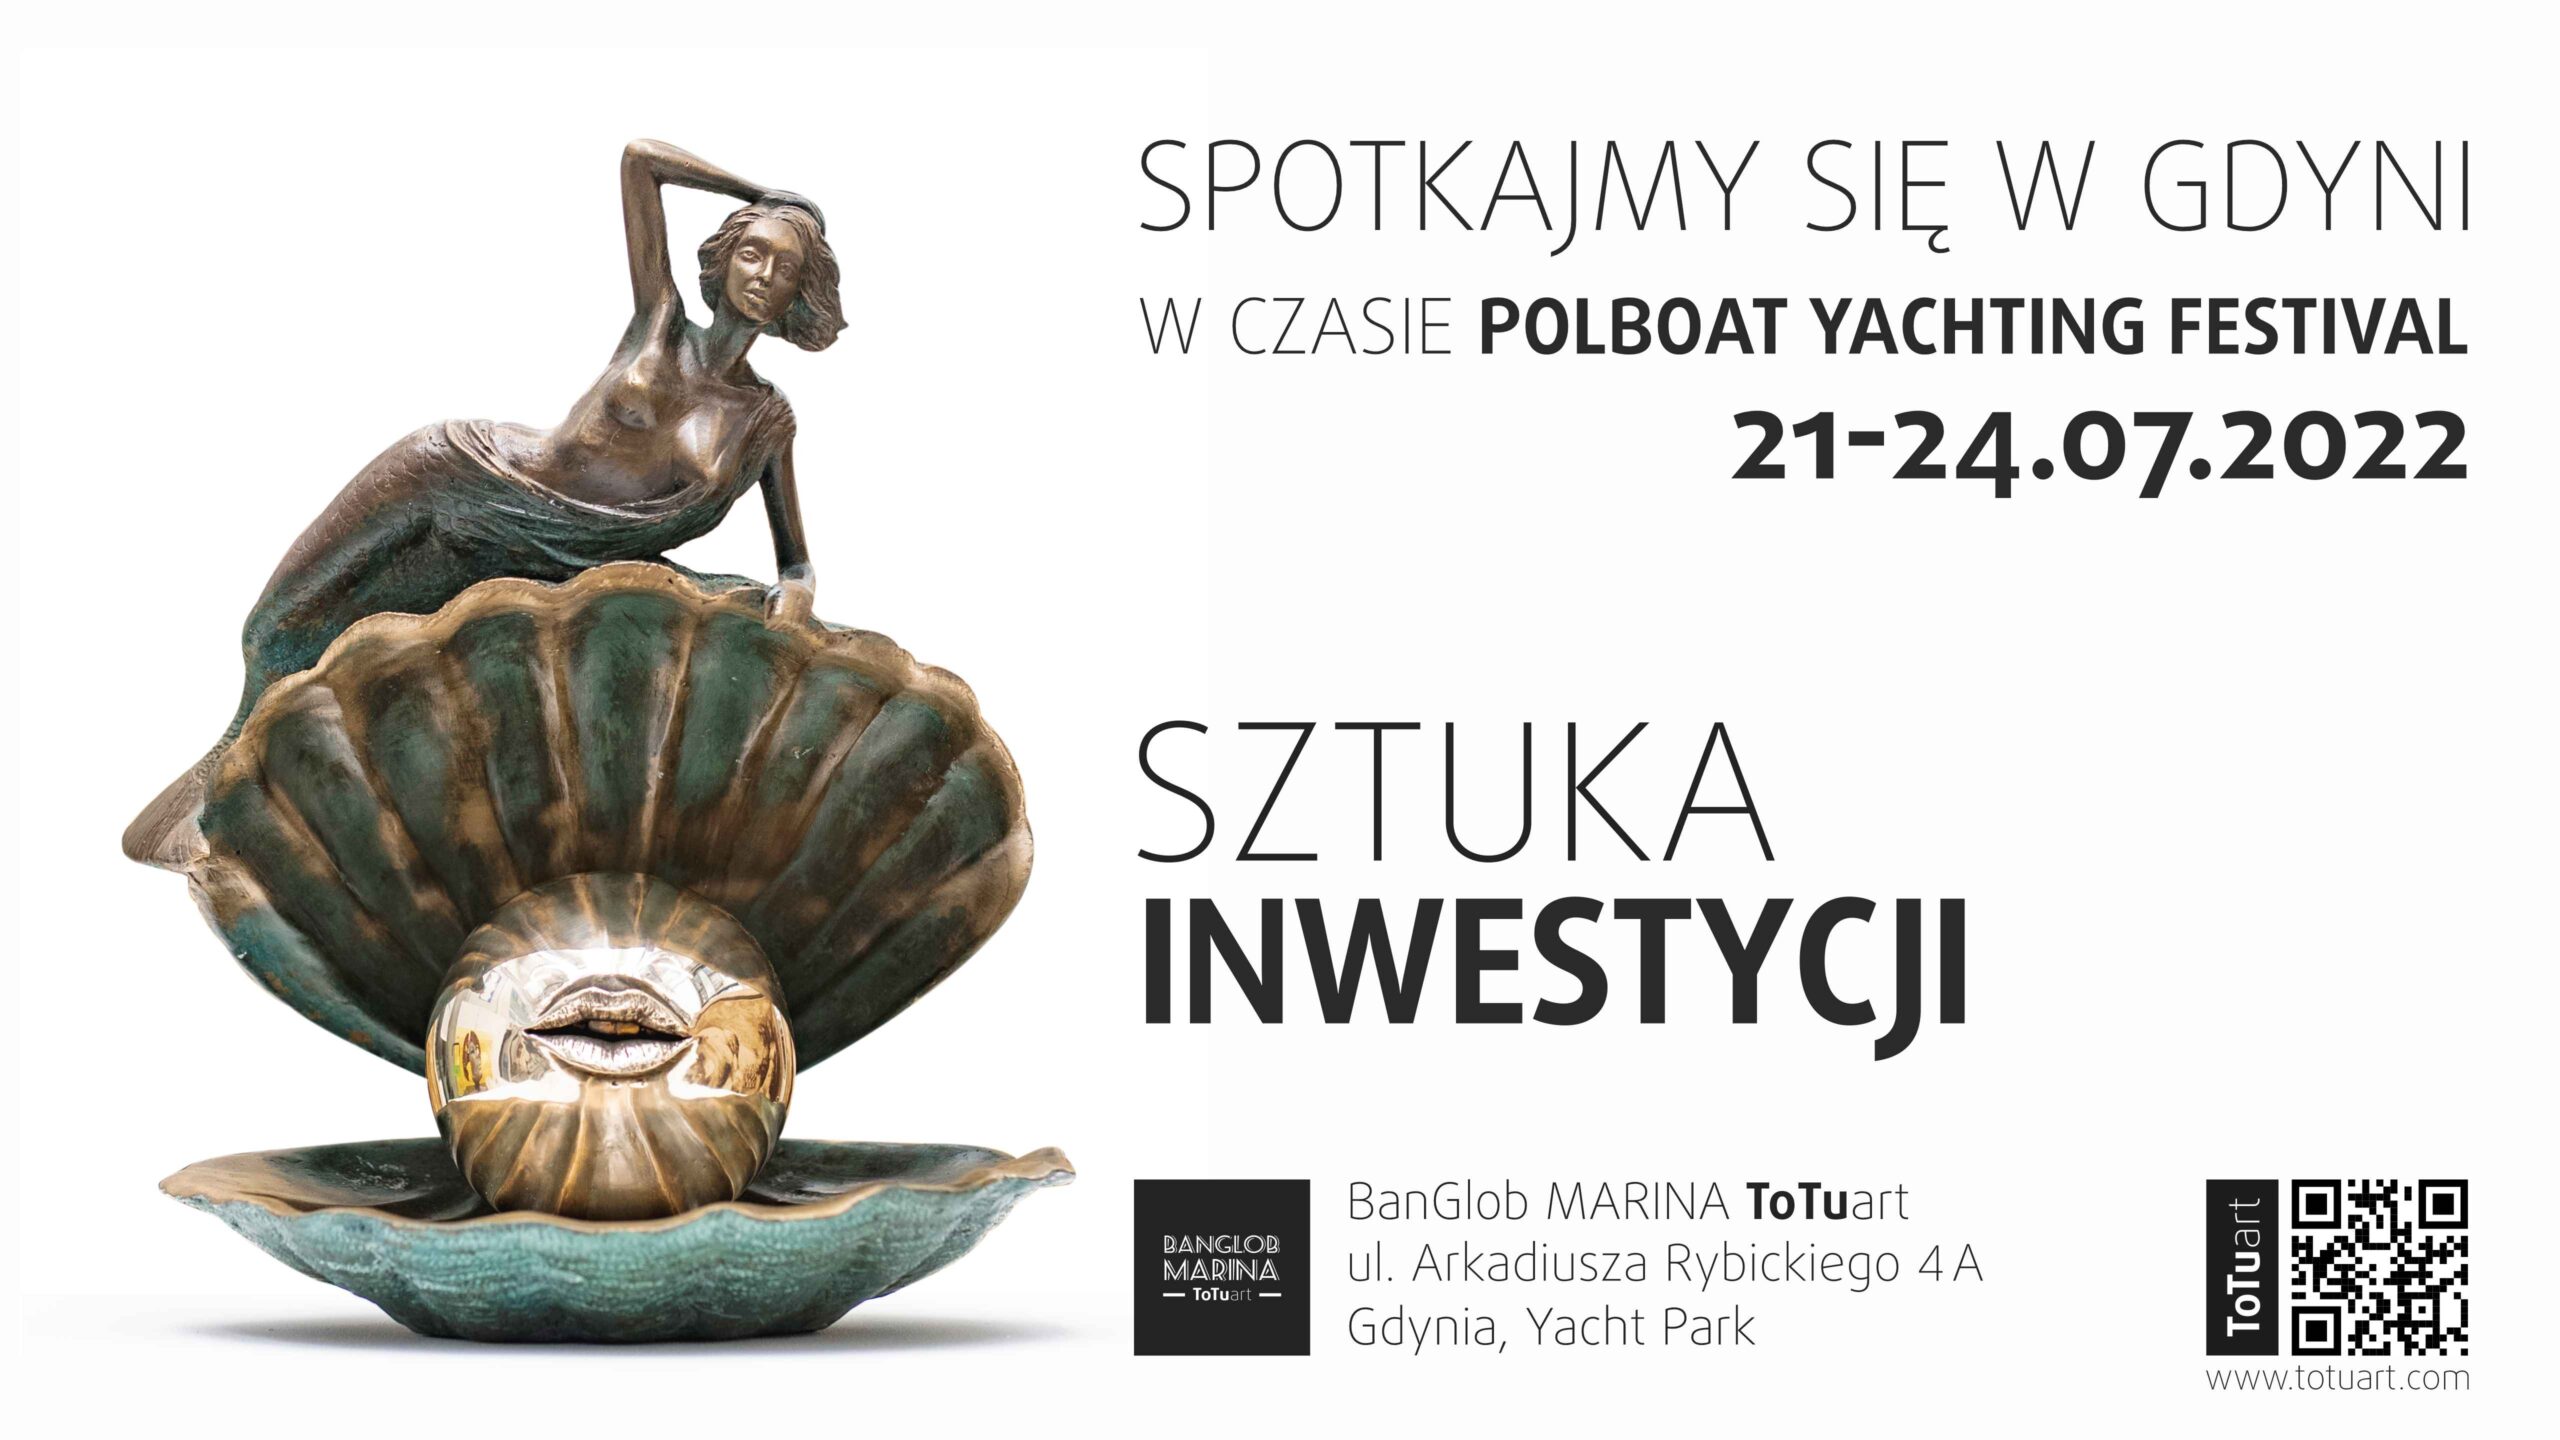 Spotkajmy się na Polboat Yachting Festival 21-24.07 w Gdyni